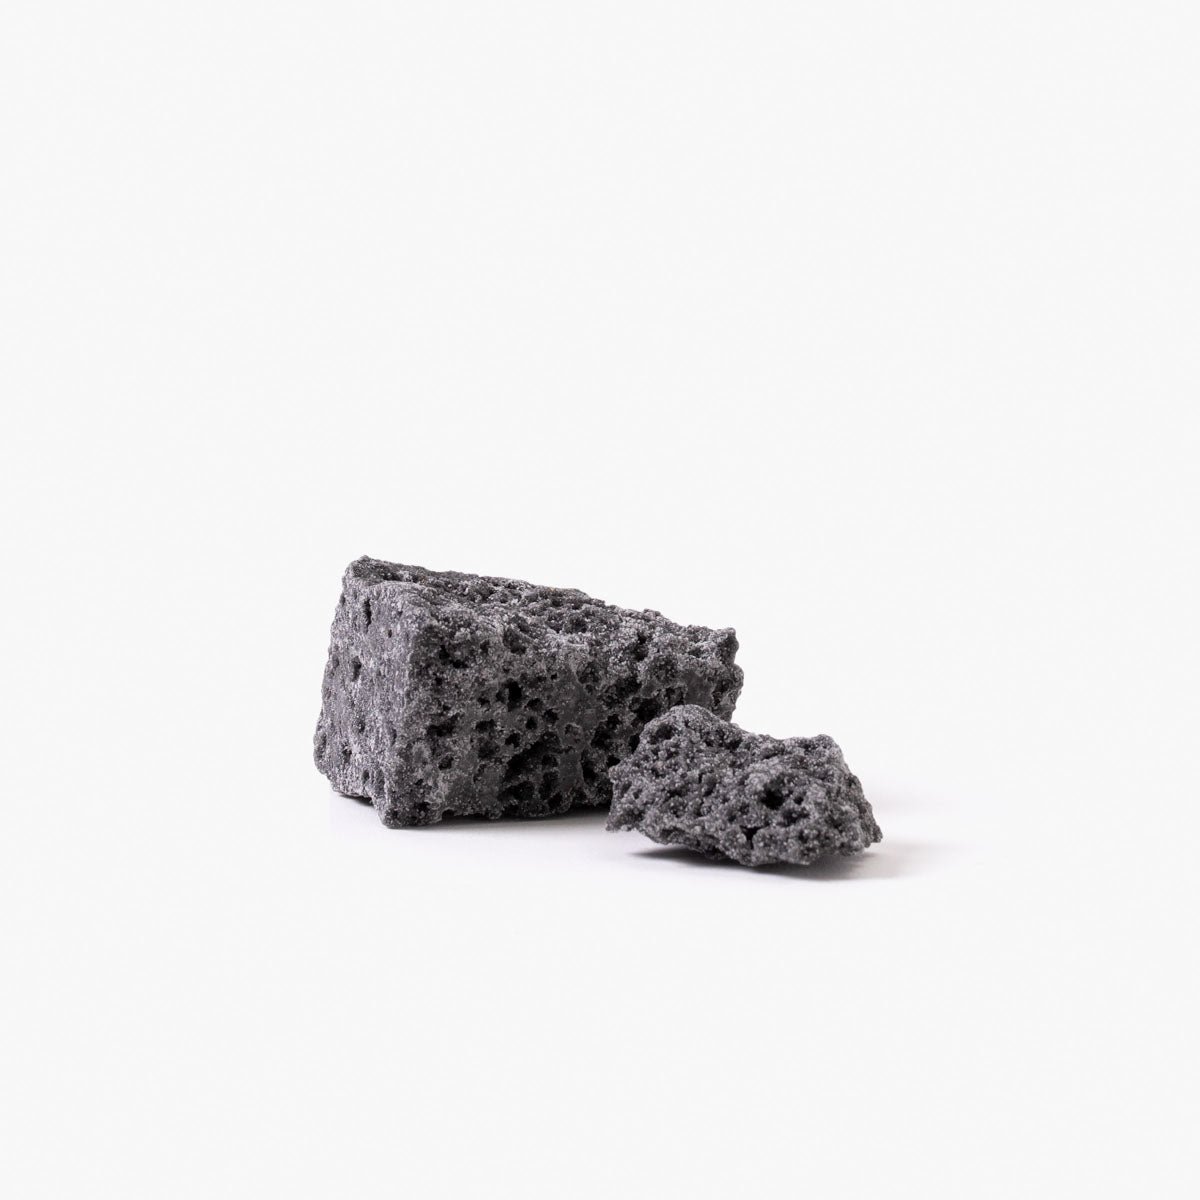 Carbón de reyes - Bolsa 250g - Bombonería Pons - Complementos